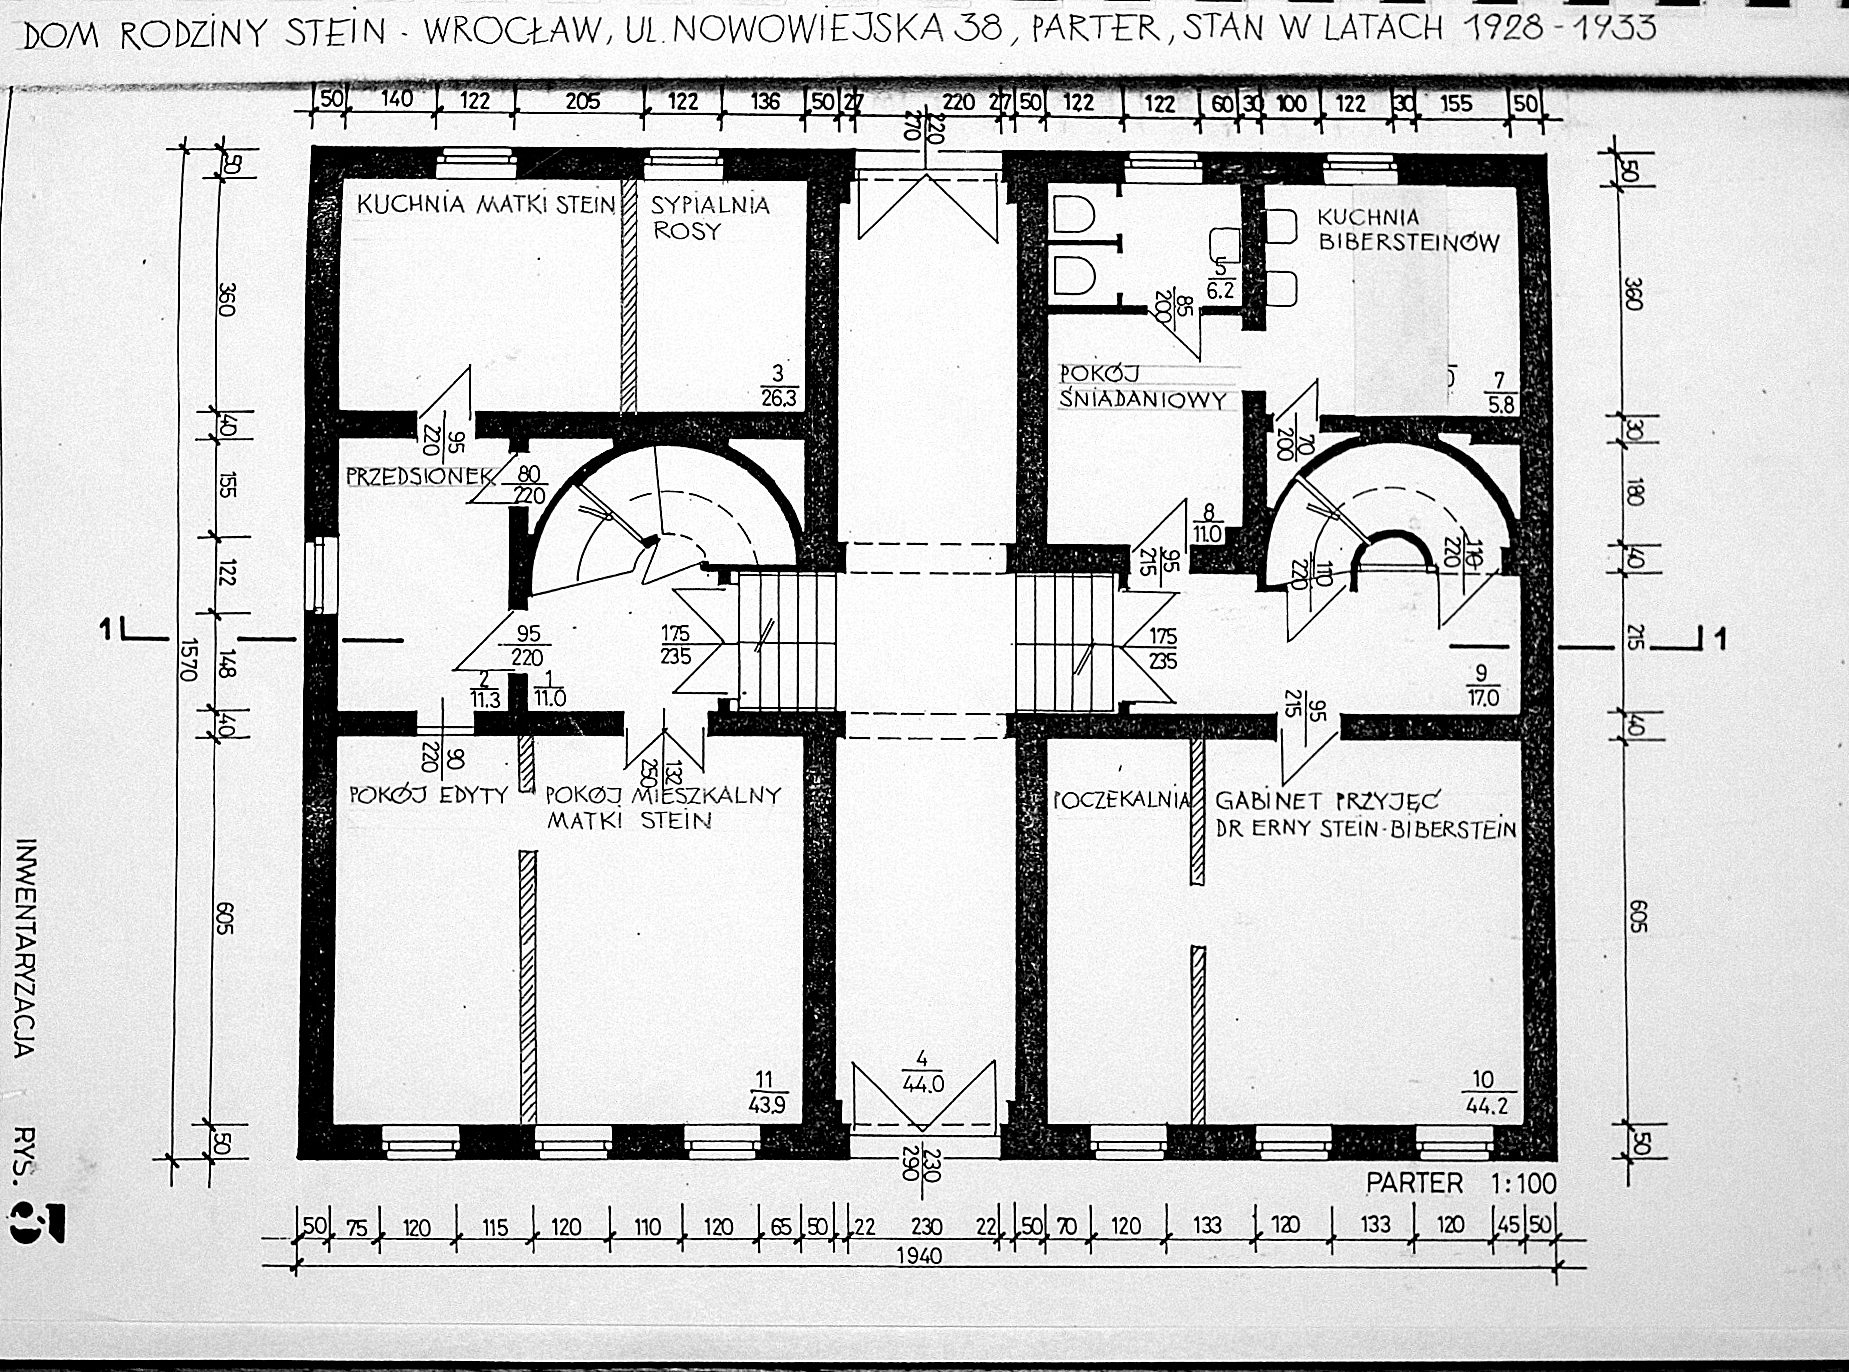 Plan domu Steinów przy Michaelisstrasse 38 we Wrocławiu w latach 1928-1933, parter, archiwum Towarzystwa im. Edyty Stein we Wrocławiu.   